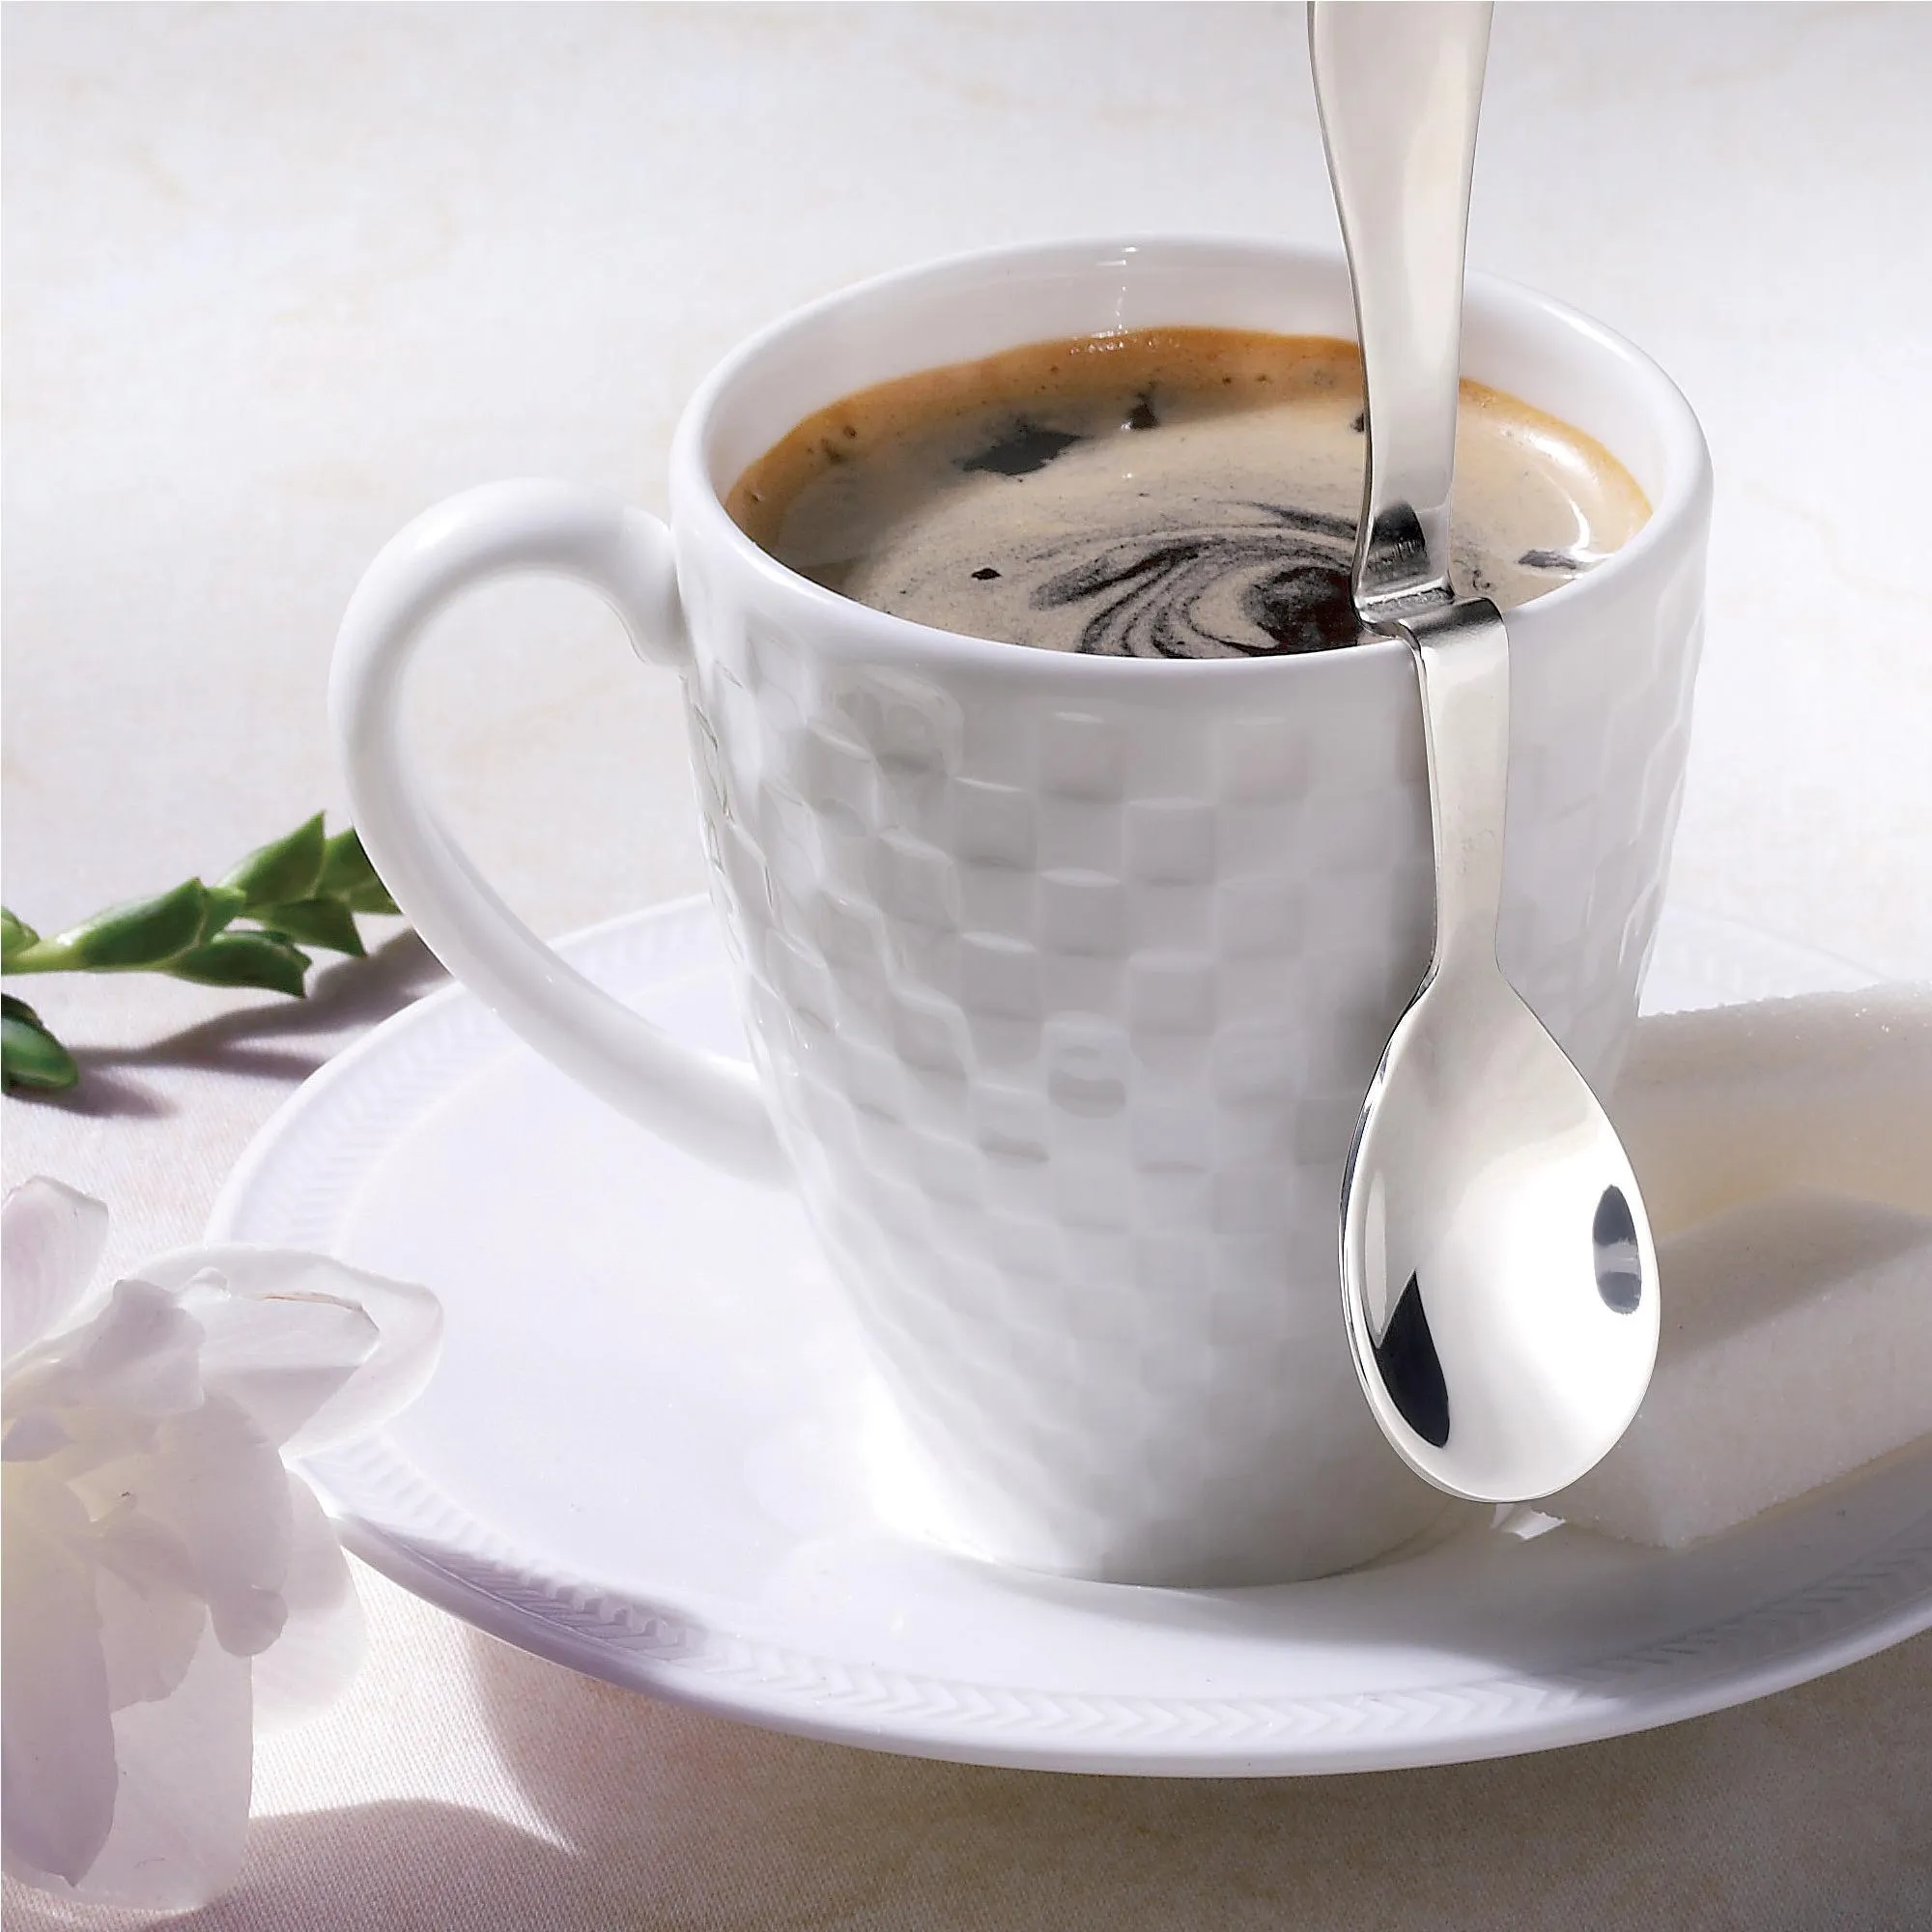 Cucchiaino da Caffe Magic in acciaio inox 18/10 lucido lunghezza 12 cm spessore 2 mm in busta di nylon